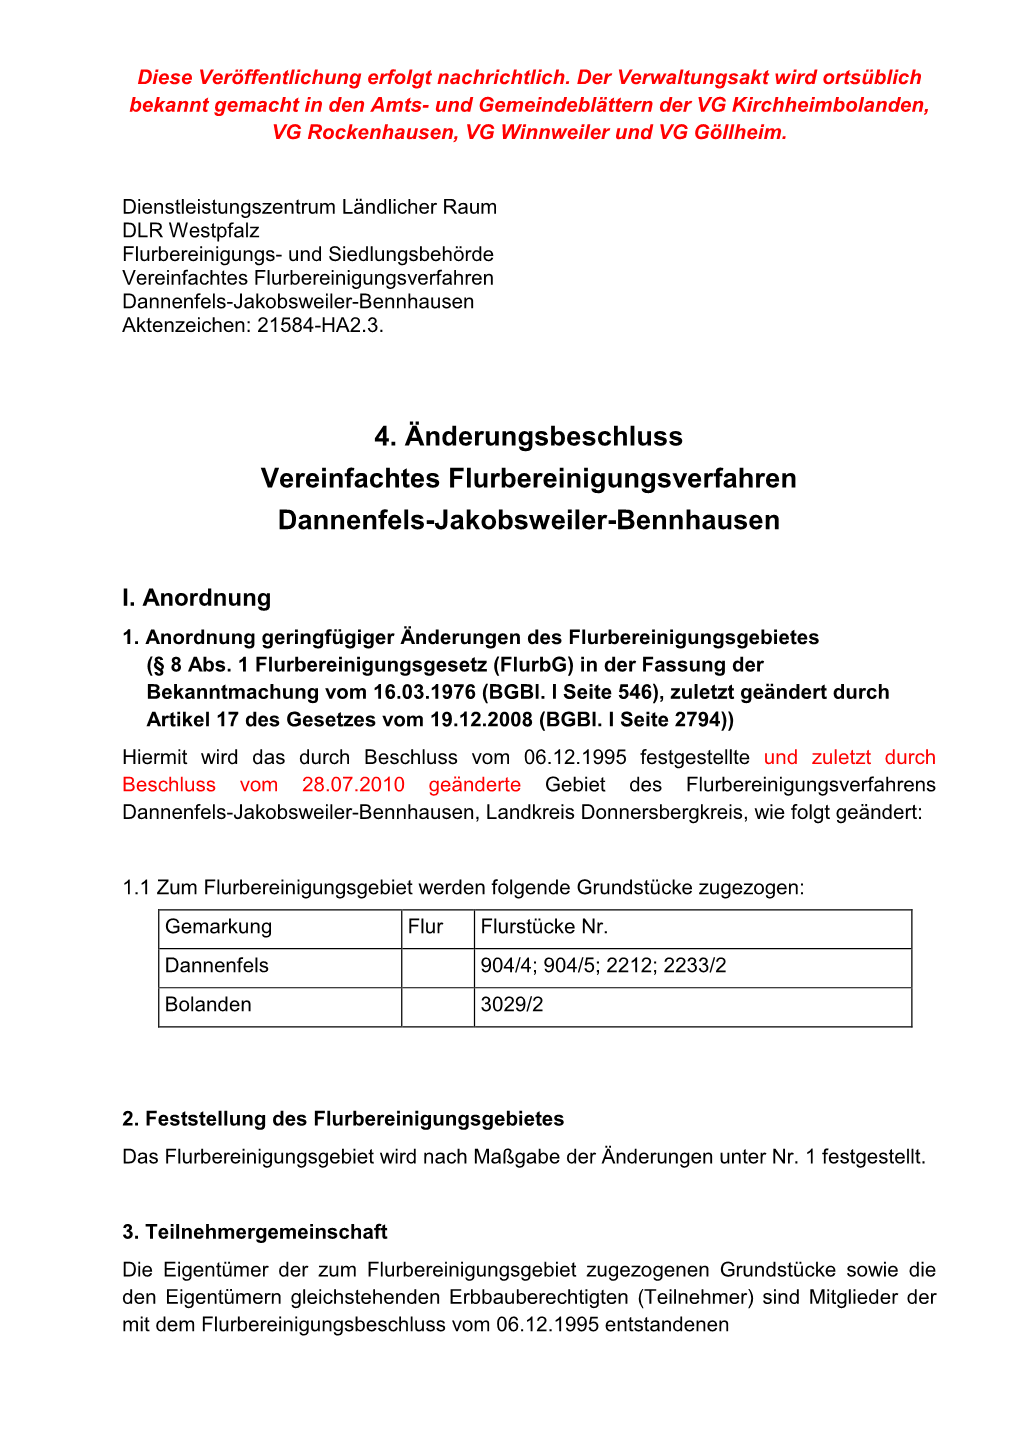 4. Änderungsbeschluss Vereinfachtes Flurbereinigungsverfahren Dannenfels-Jakobsweiler-Bennhausen